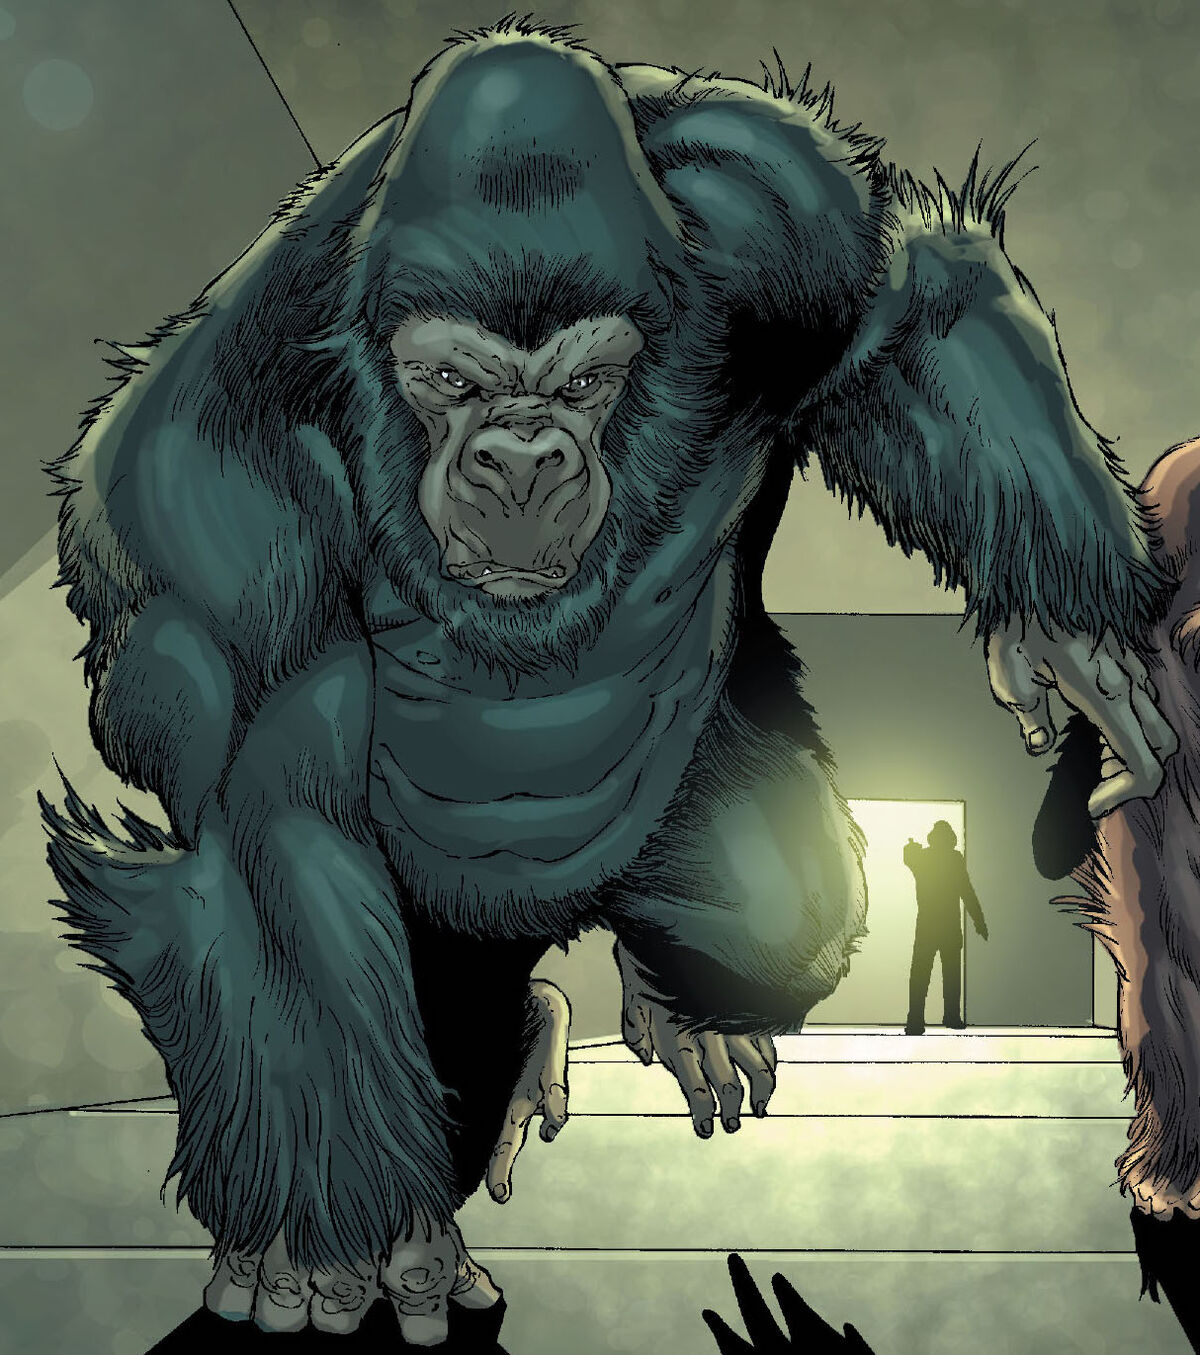 Quadro Faces Homem Aranha Marvel - 20x20 - Gorila Clube